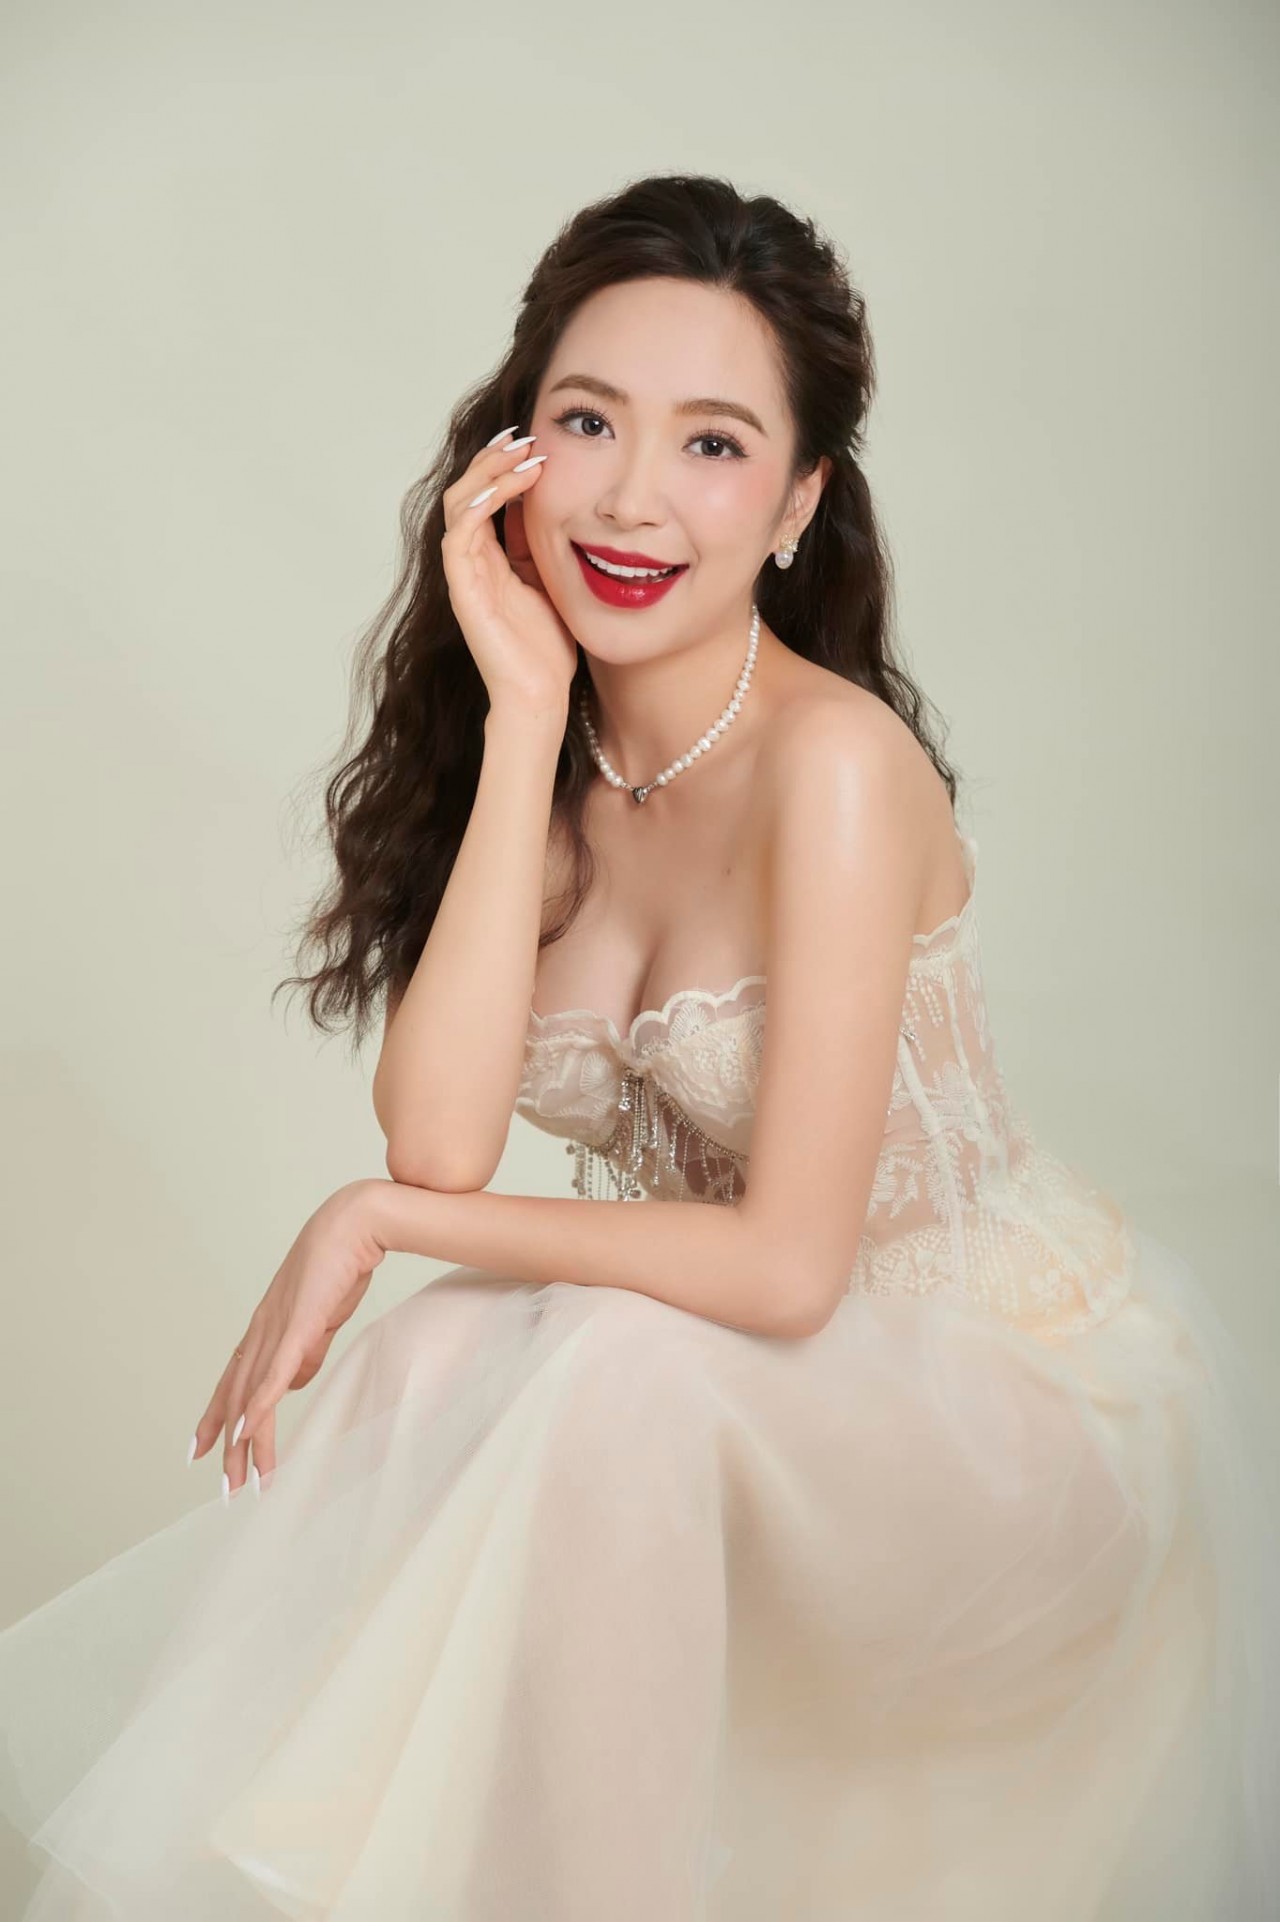 Gu thời trang cá tính của Kim Oanh phim Dưới bóng cây hạnh phúc